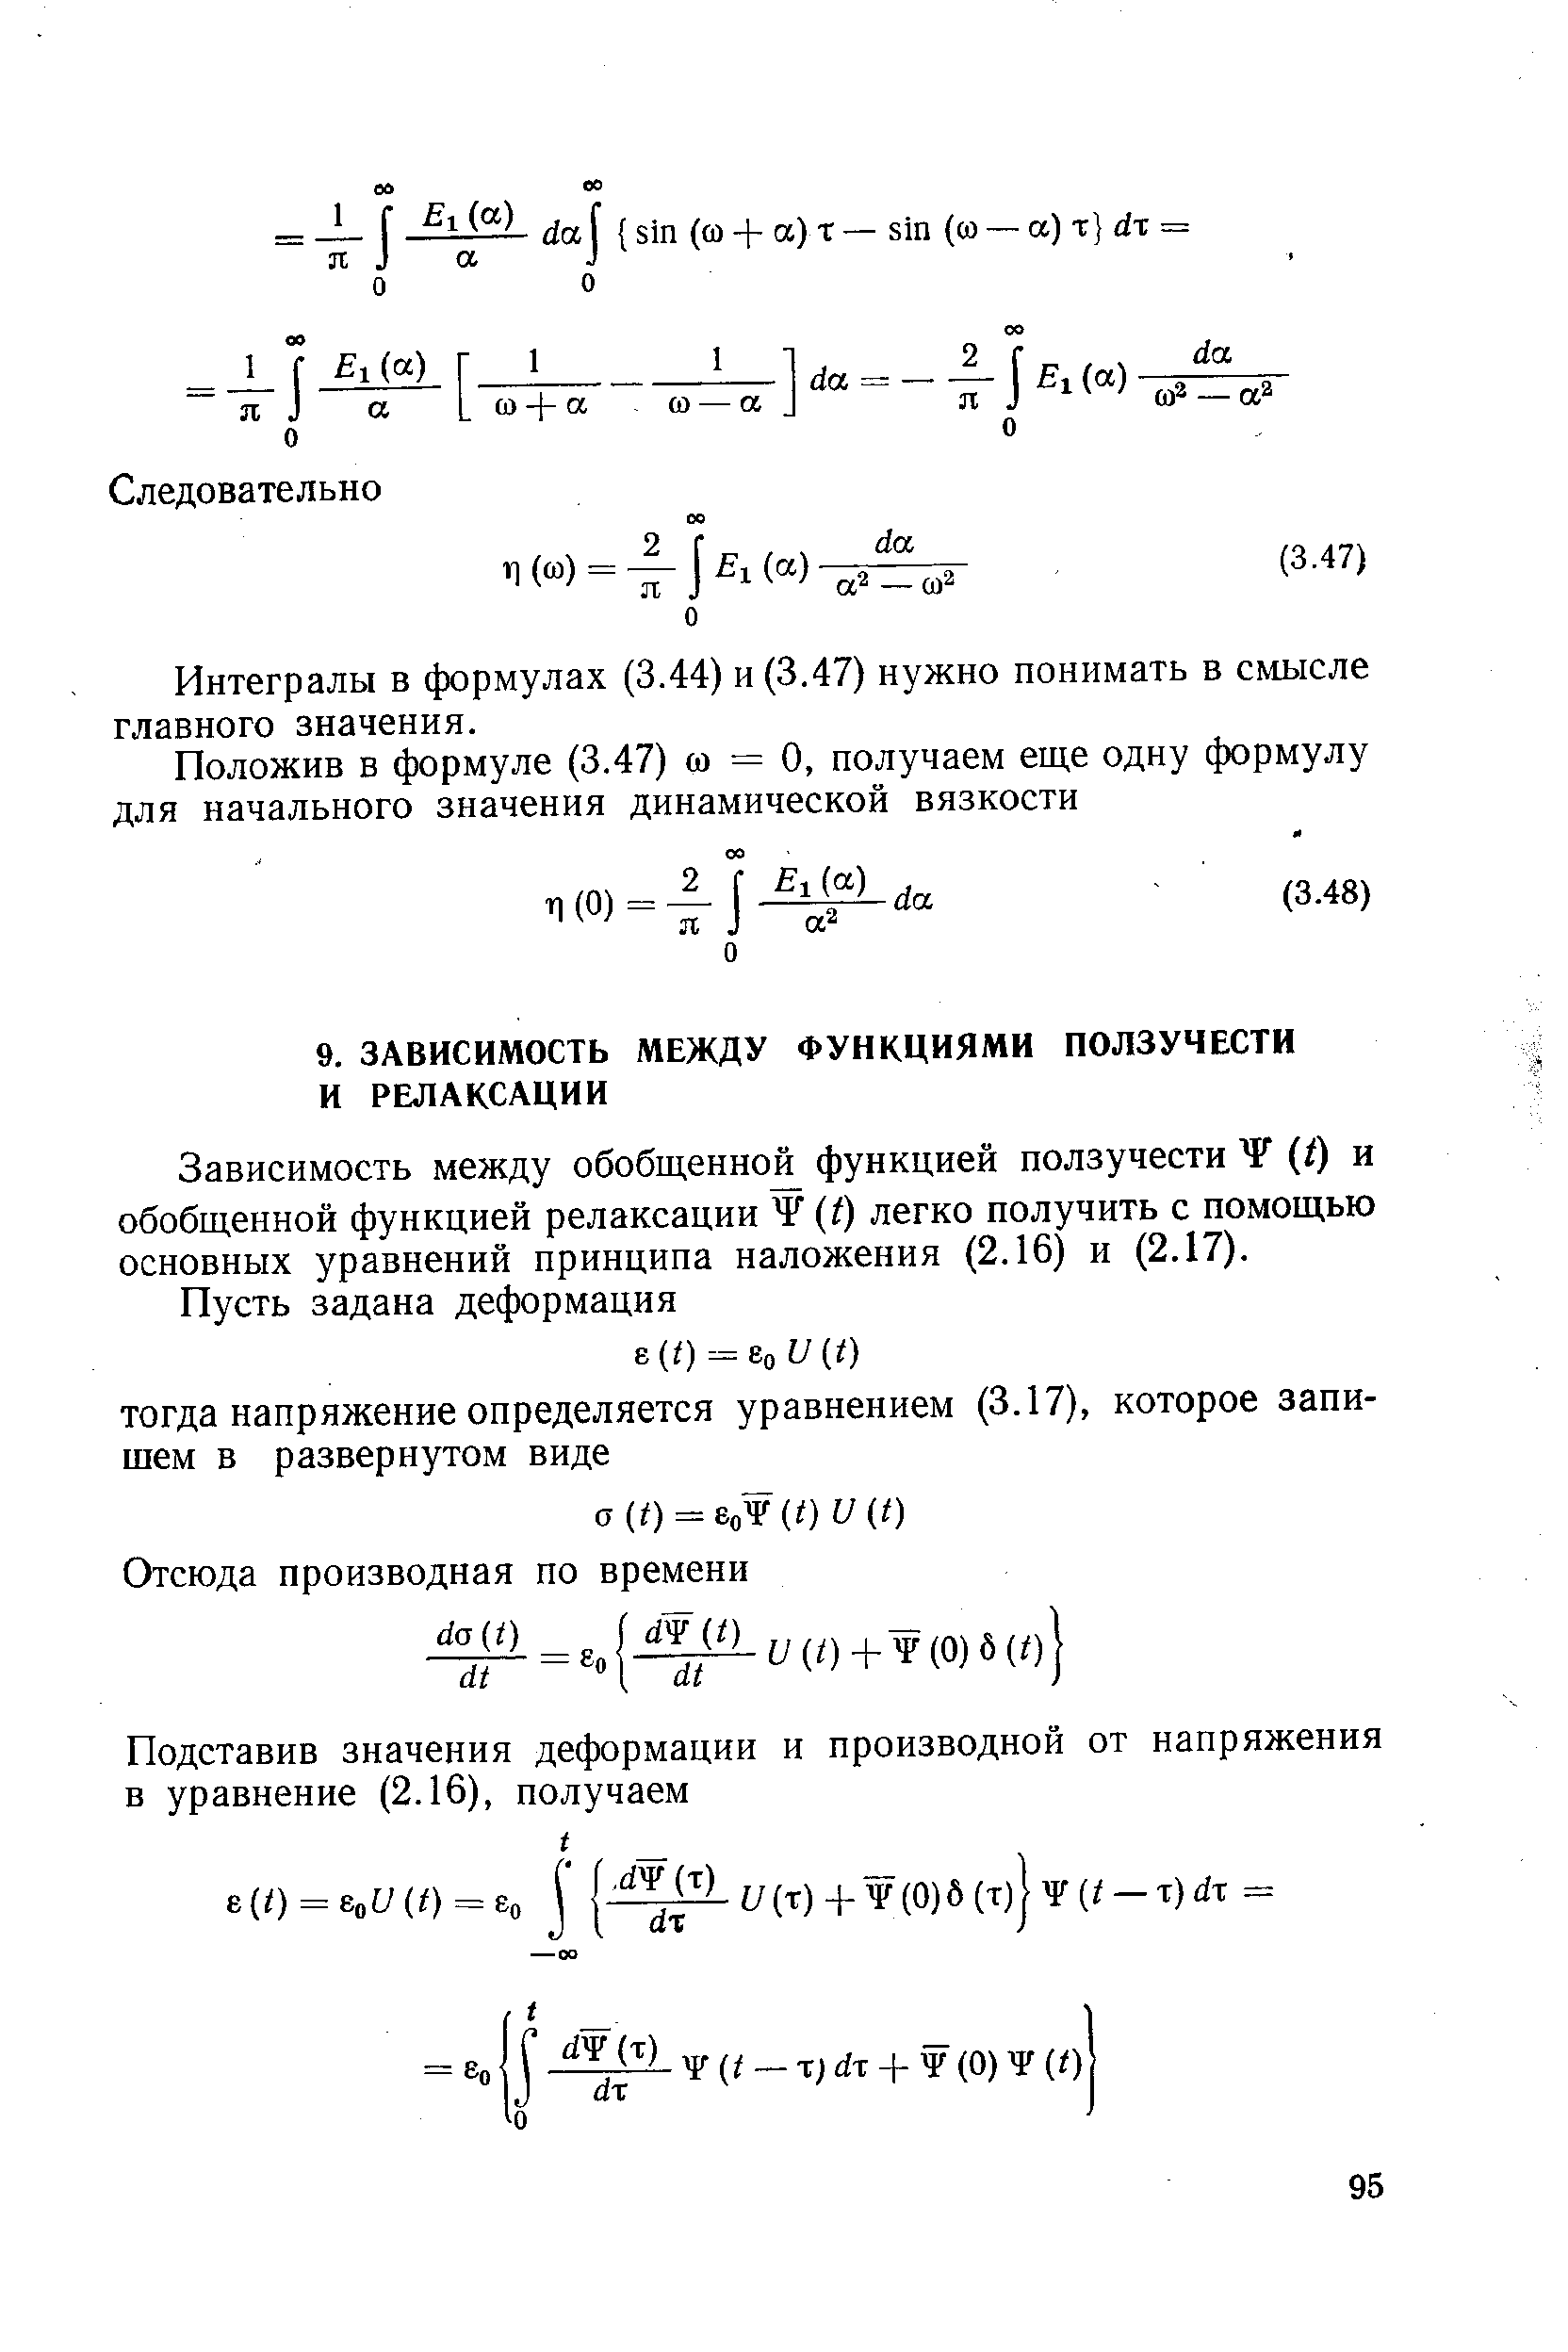 Зависимость между обобщенно функцией ползучести (/) и обобщенной функцией релаксации (/) легко получить с помощью основных уравнений принципа наложения (2.16) и (2.17).